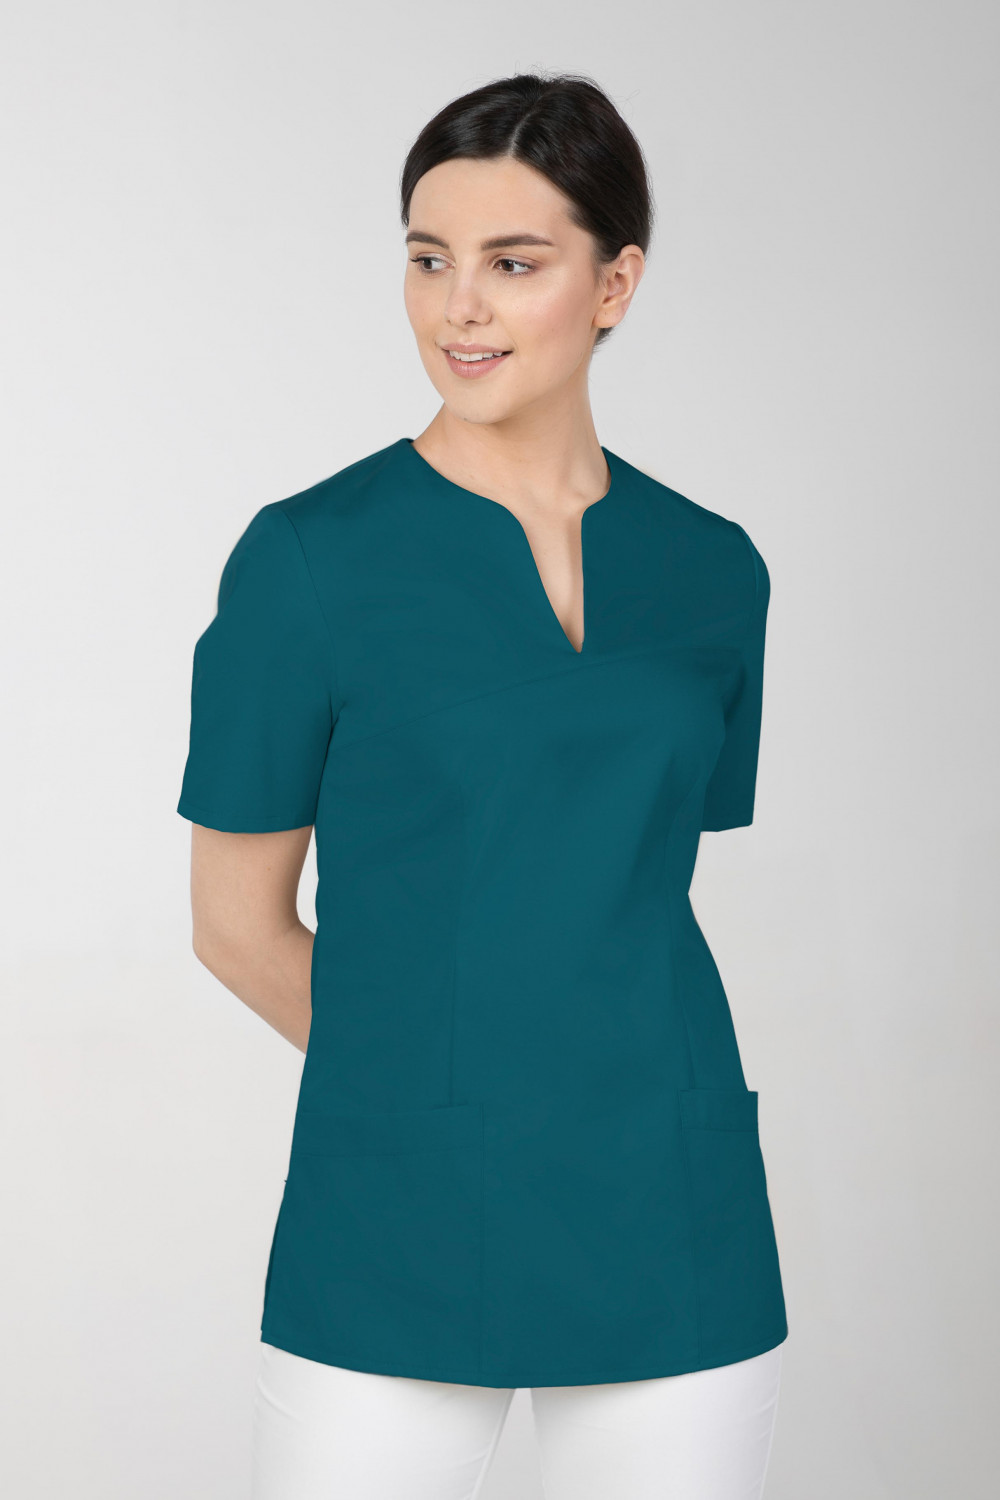 M-323 Bluza medyczna kosmetyczna damska fartuch kolor ciemna zieleń